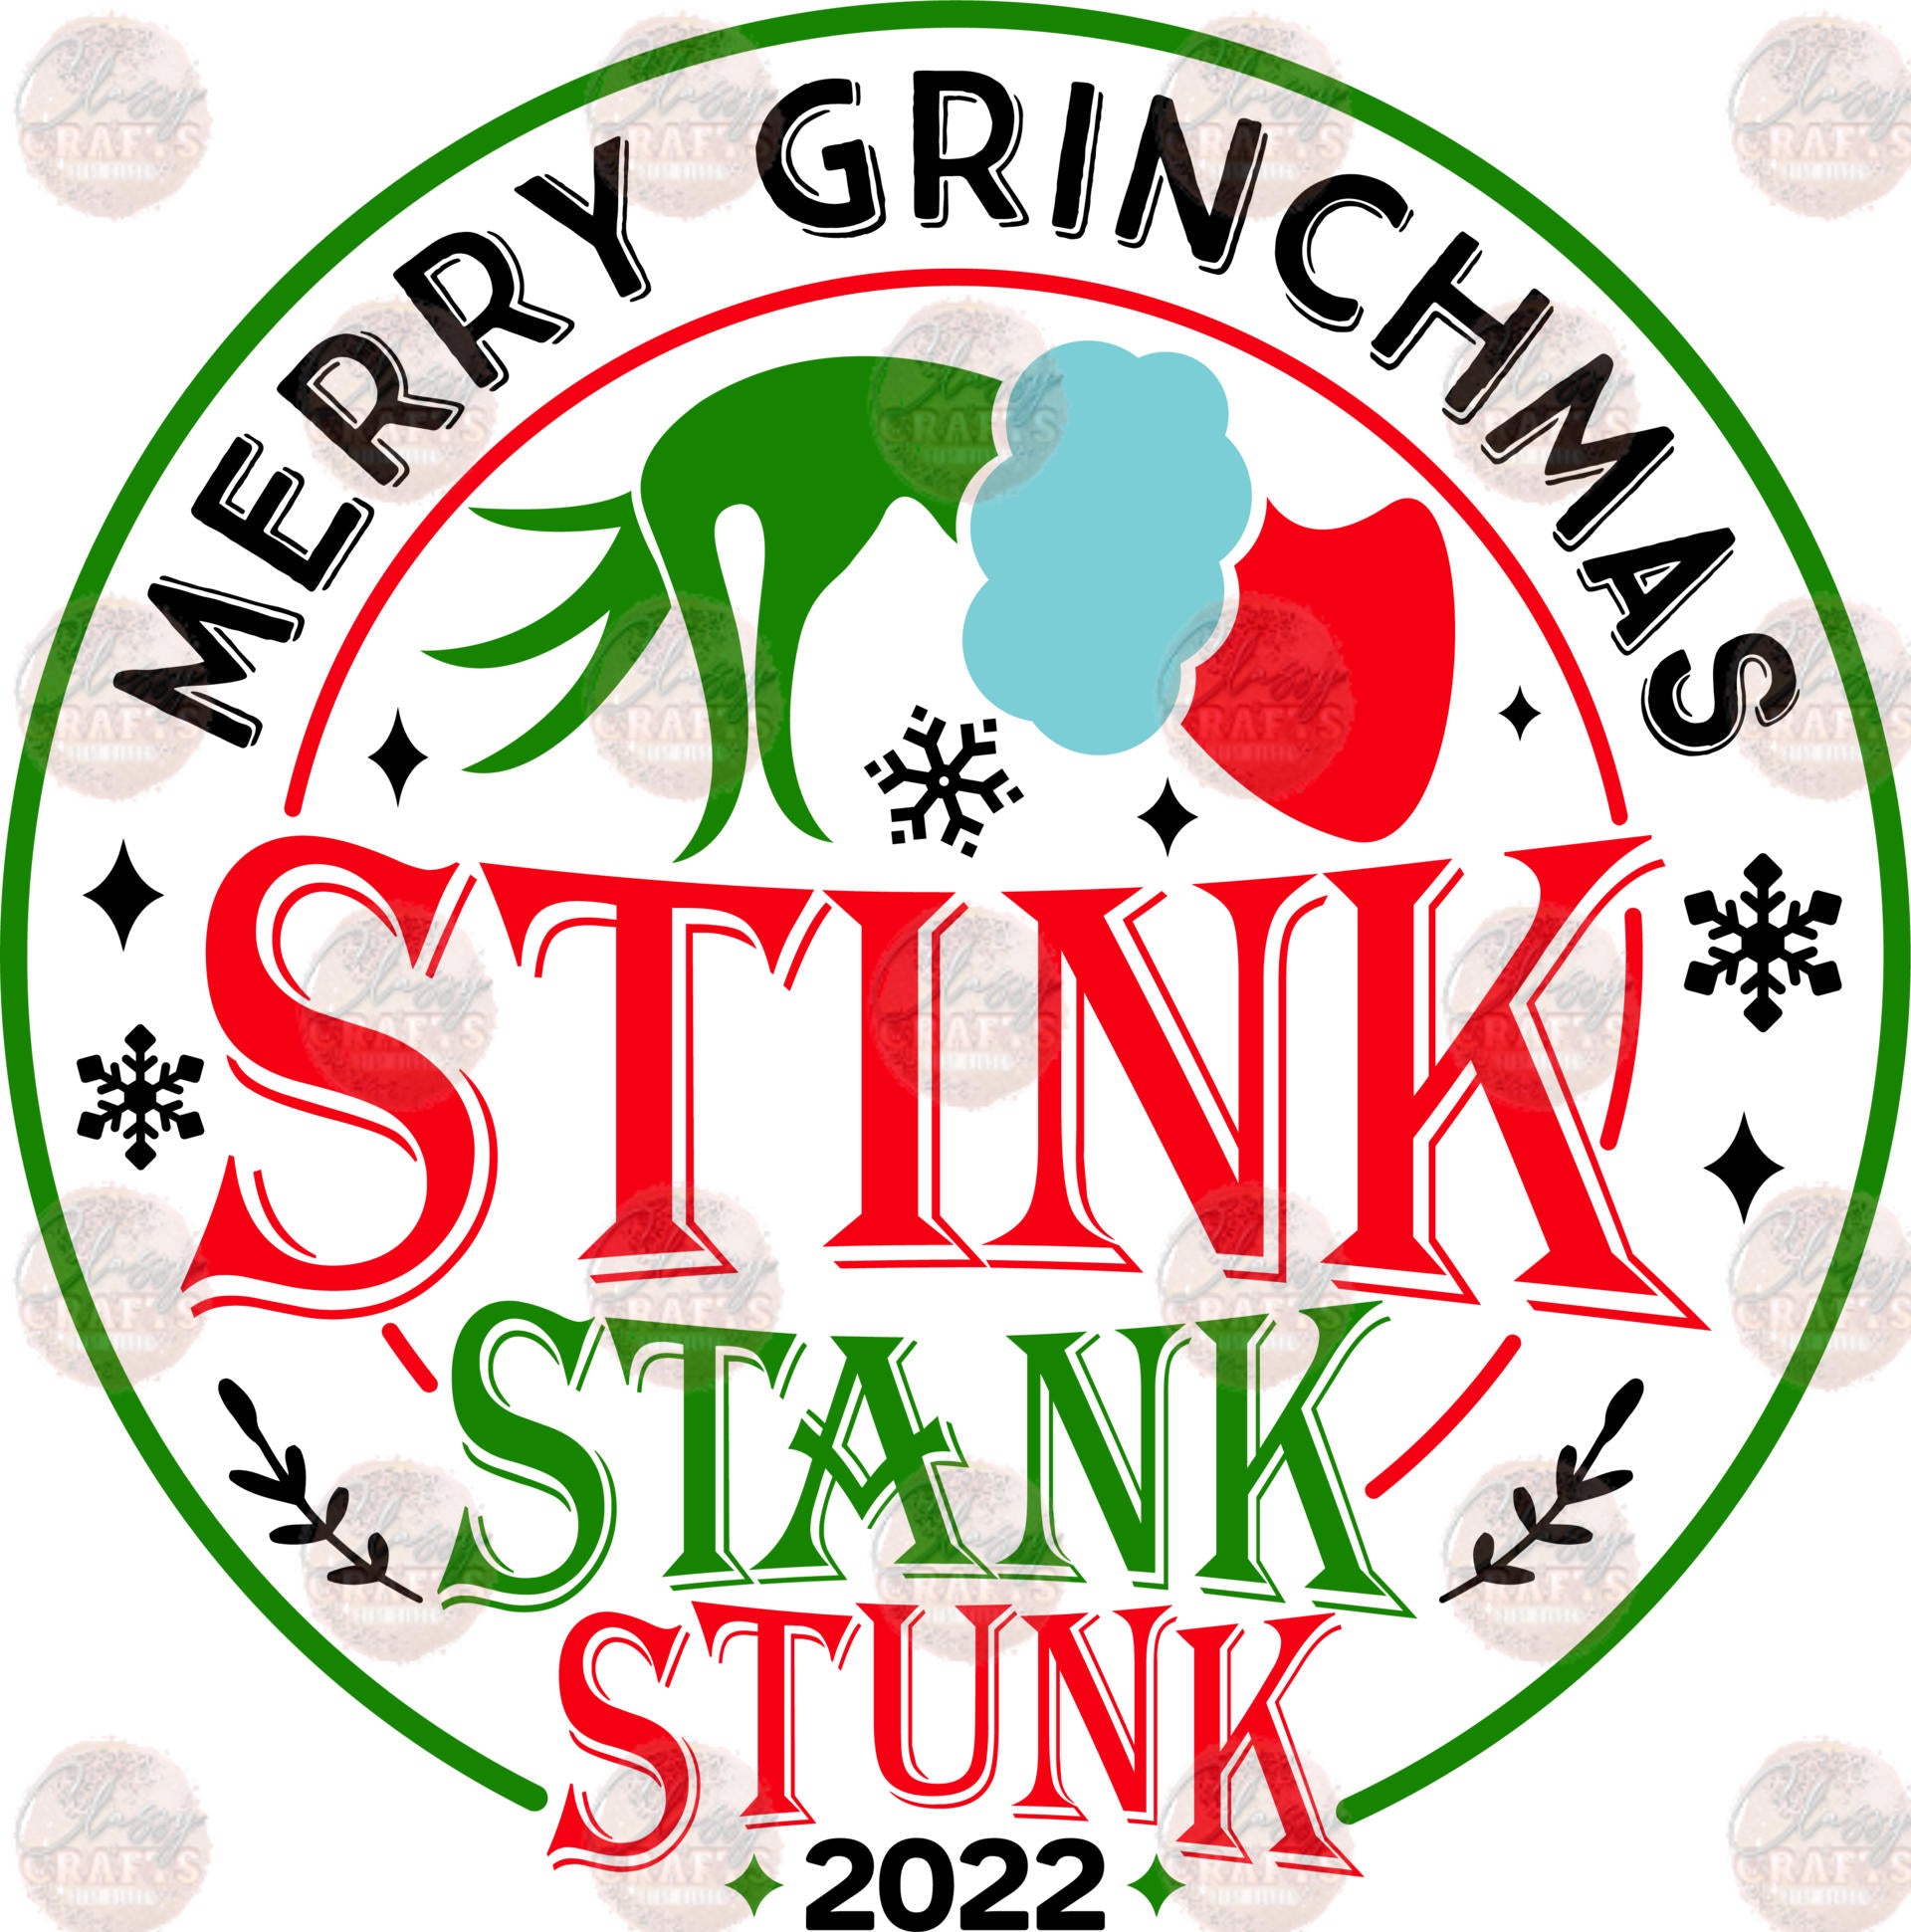 Stink Stank Stunk - Sublimation Transfer – Classy Crafts